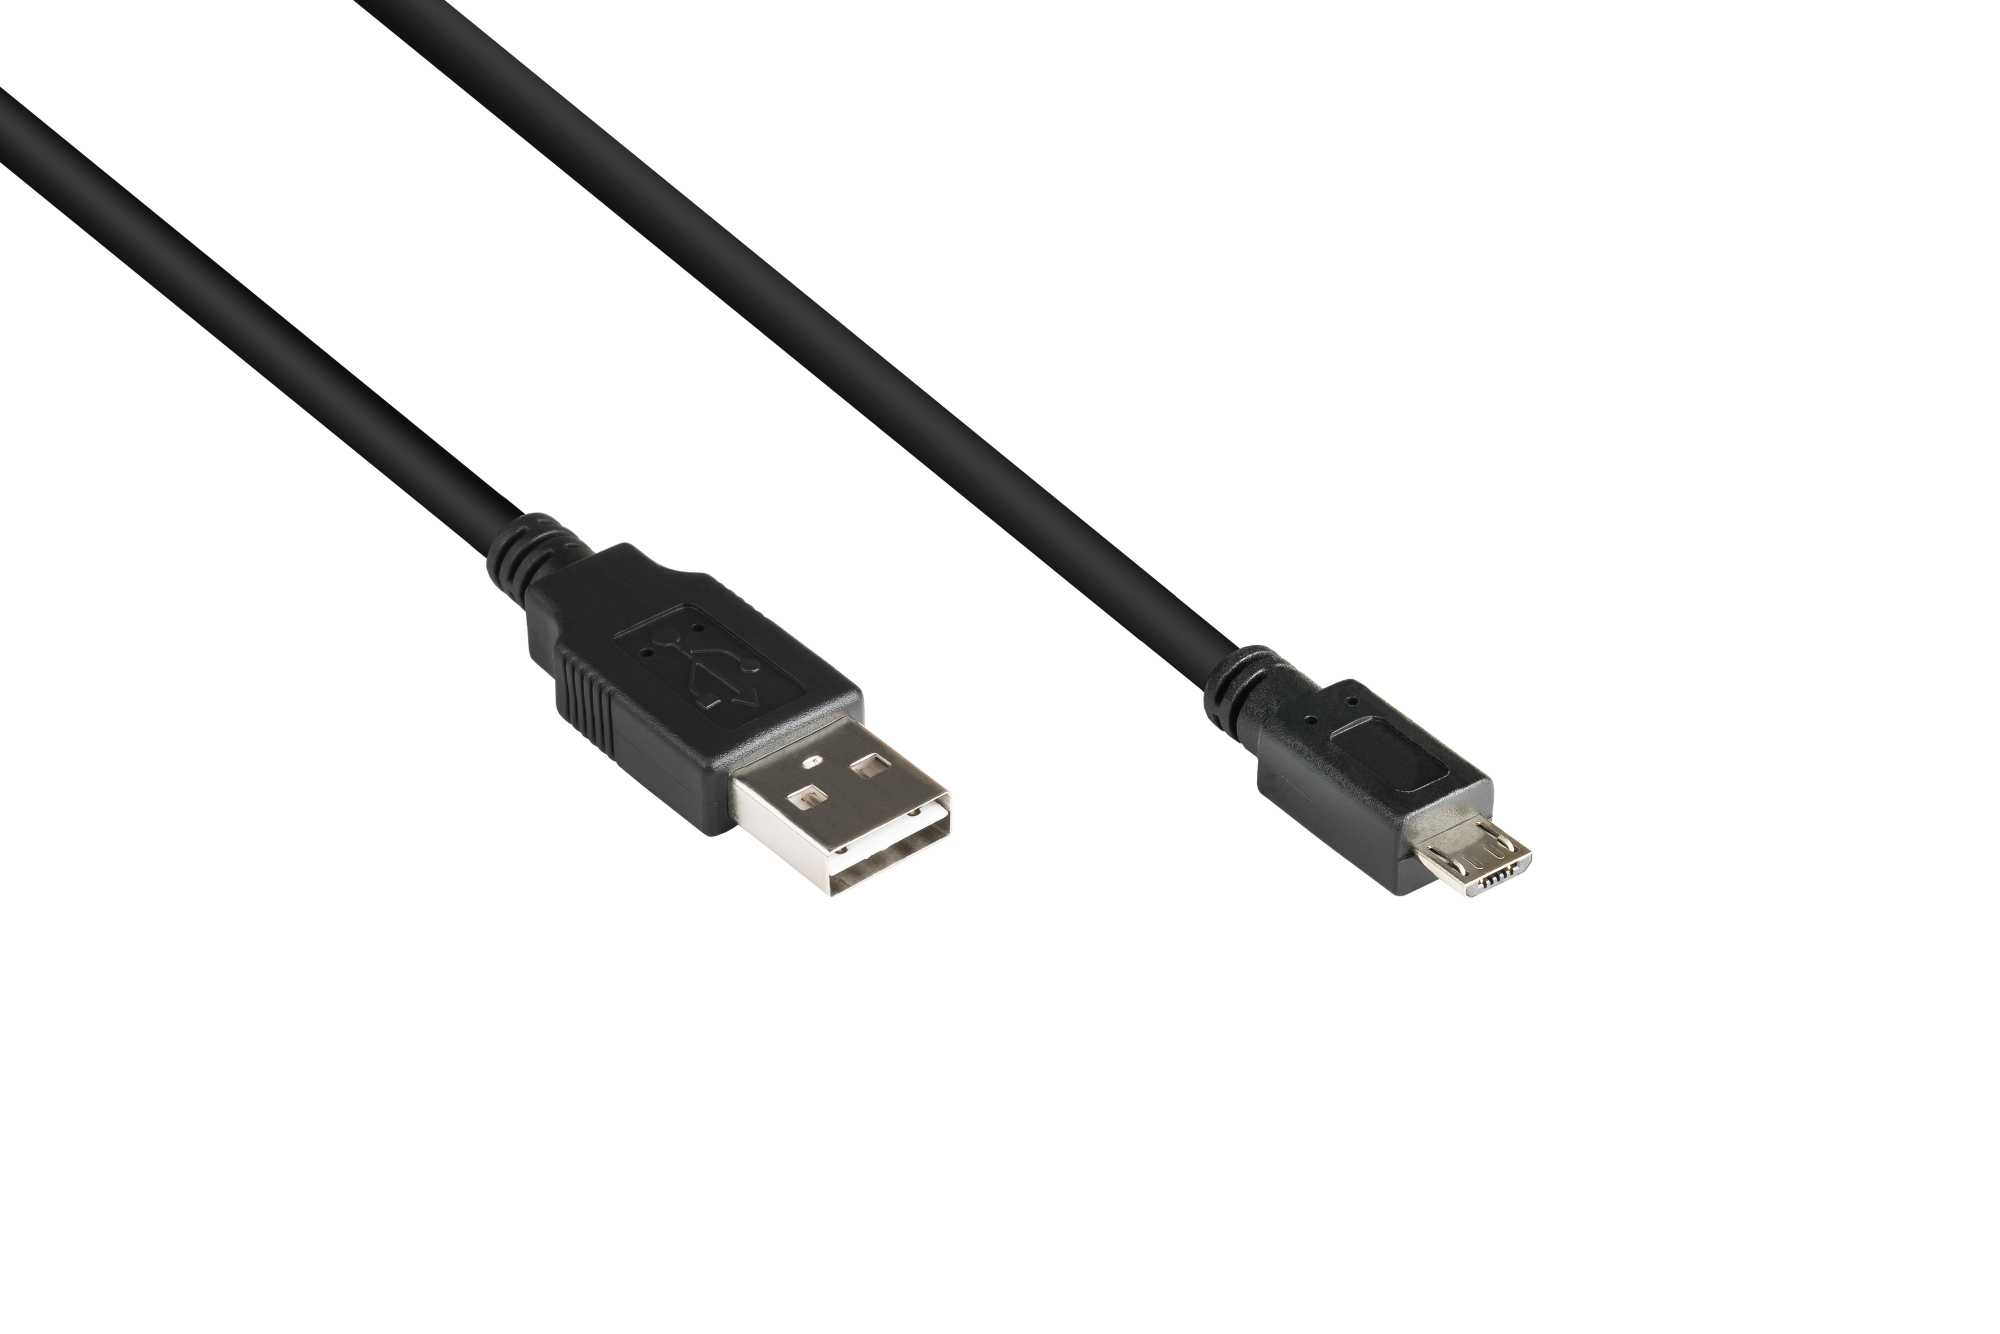 Anschlusskabel USB 2.0 EASY Stecker A an Stecker Micro B, schwarz, 0,5m, Good Connections®